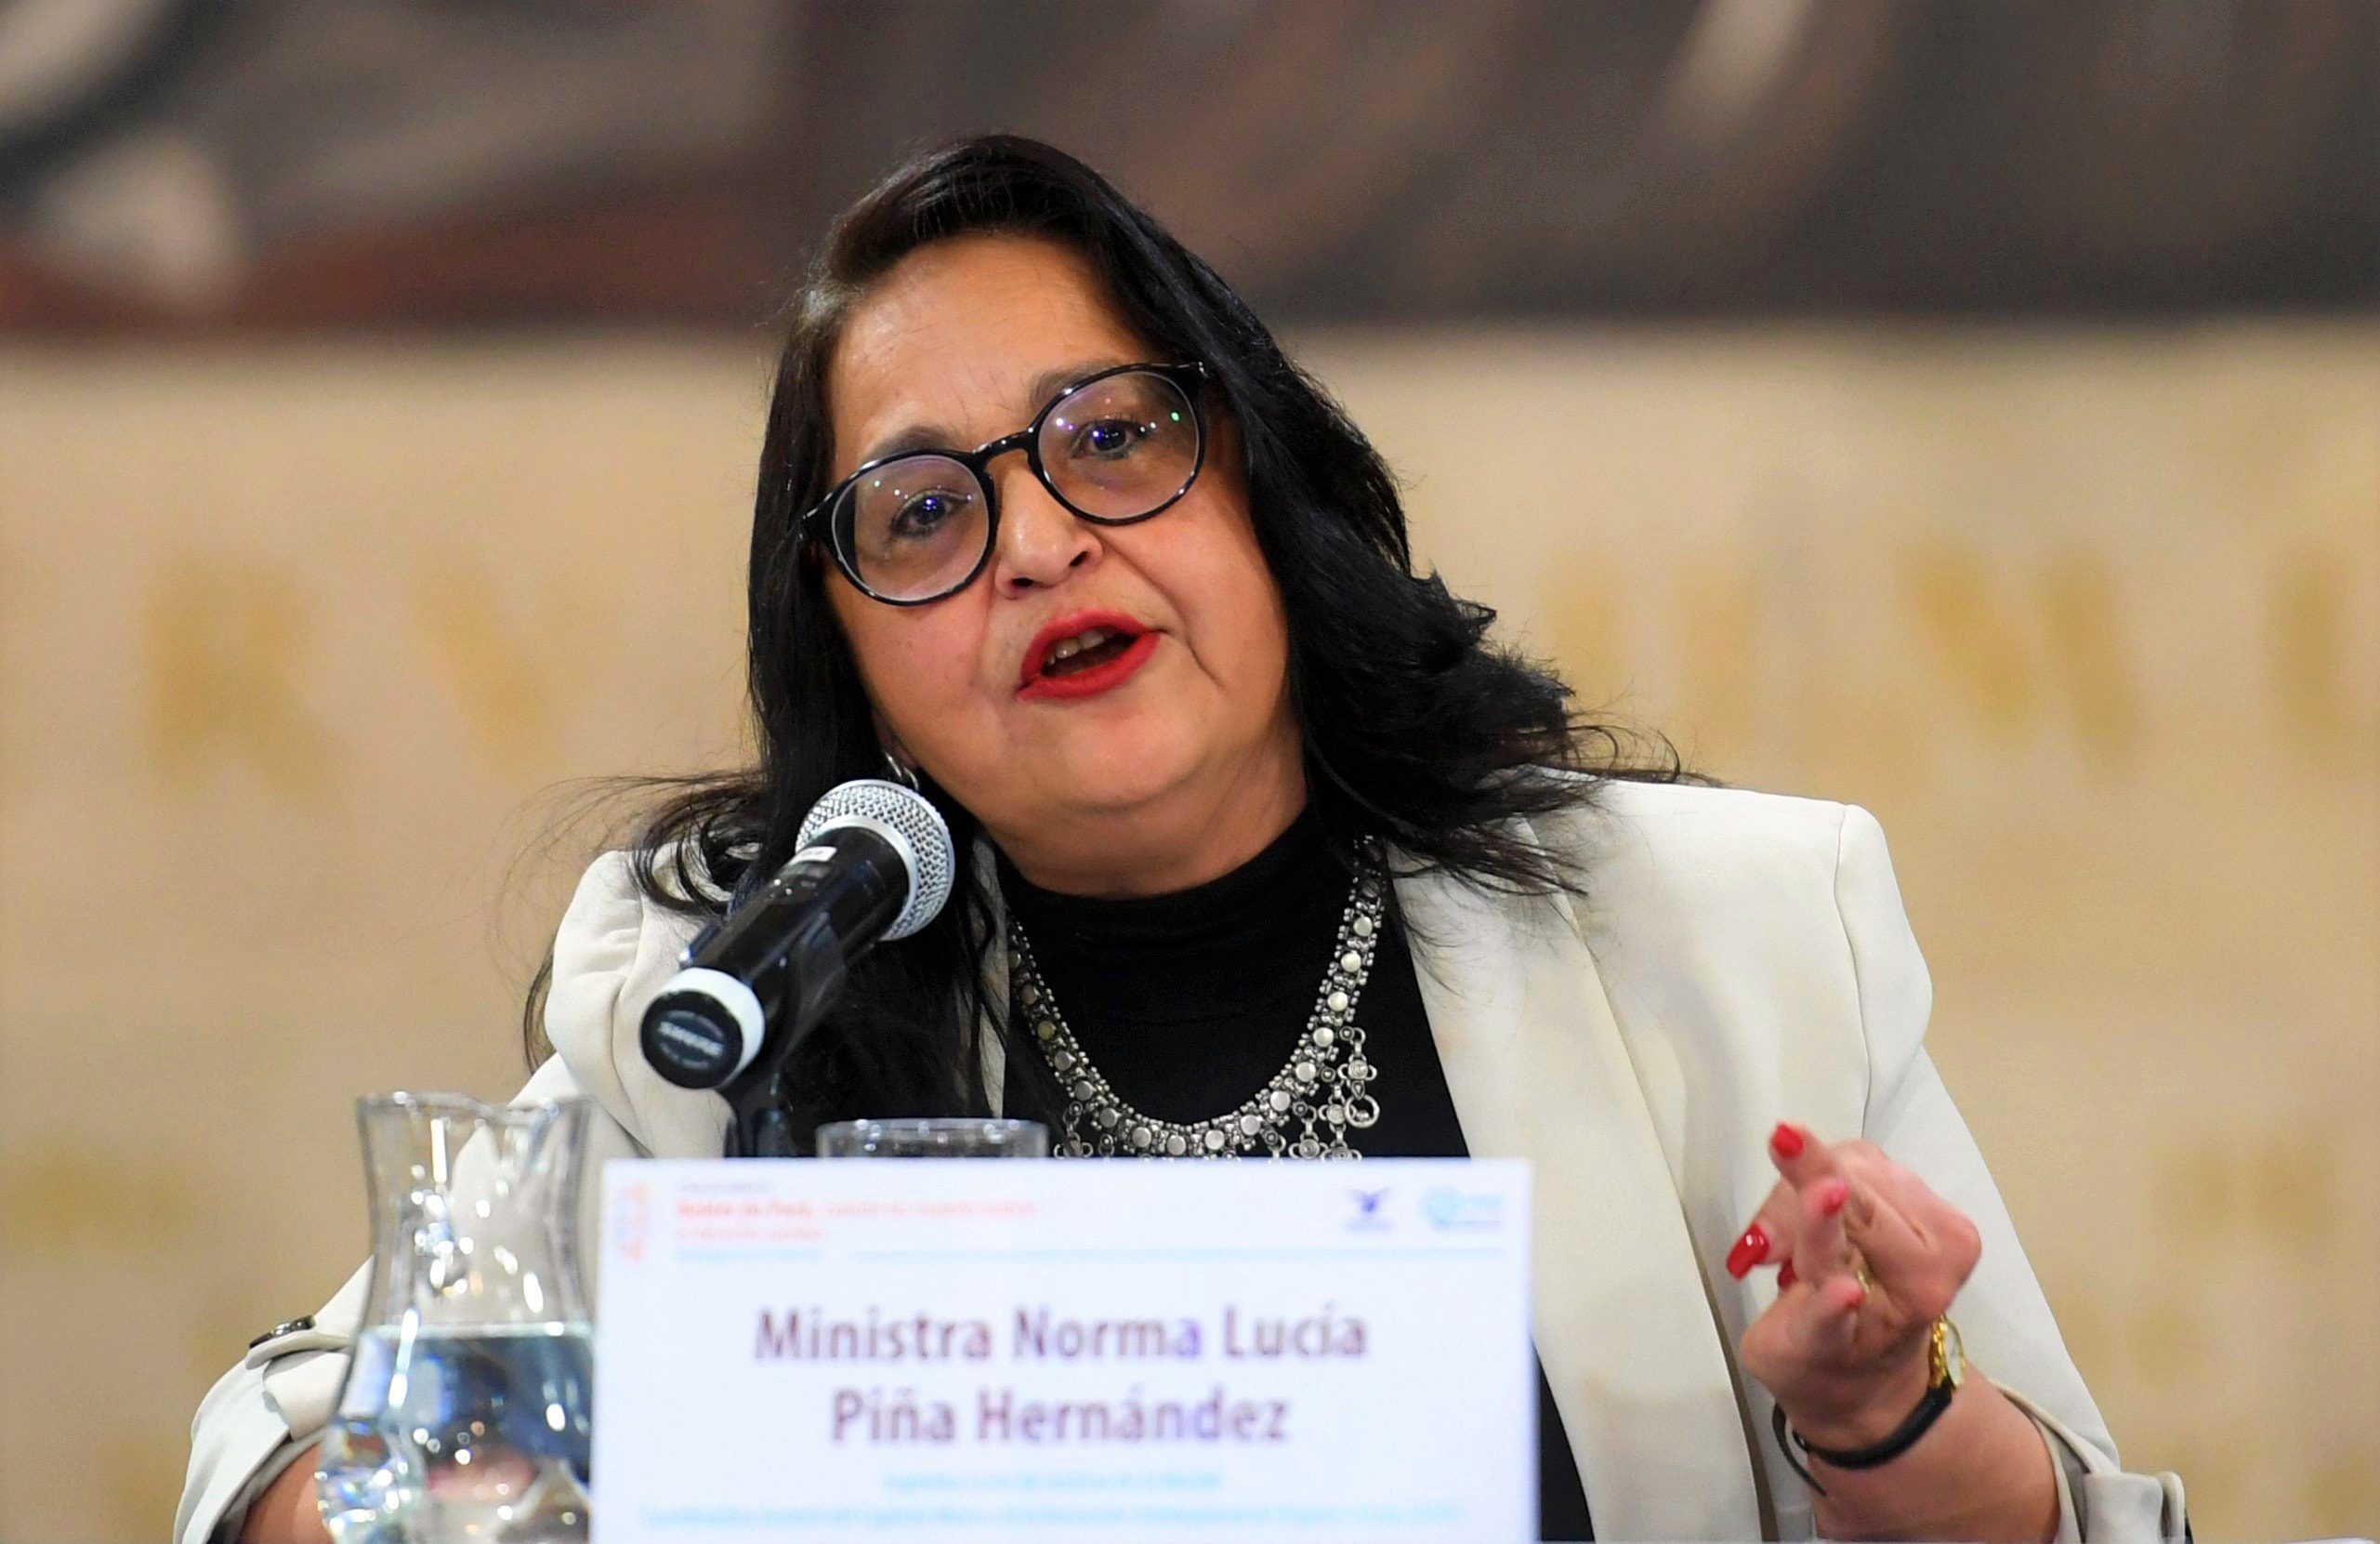 Norma Piña Hernández es elegida ministra presidenta de la SCJN